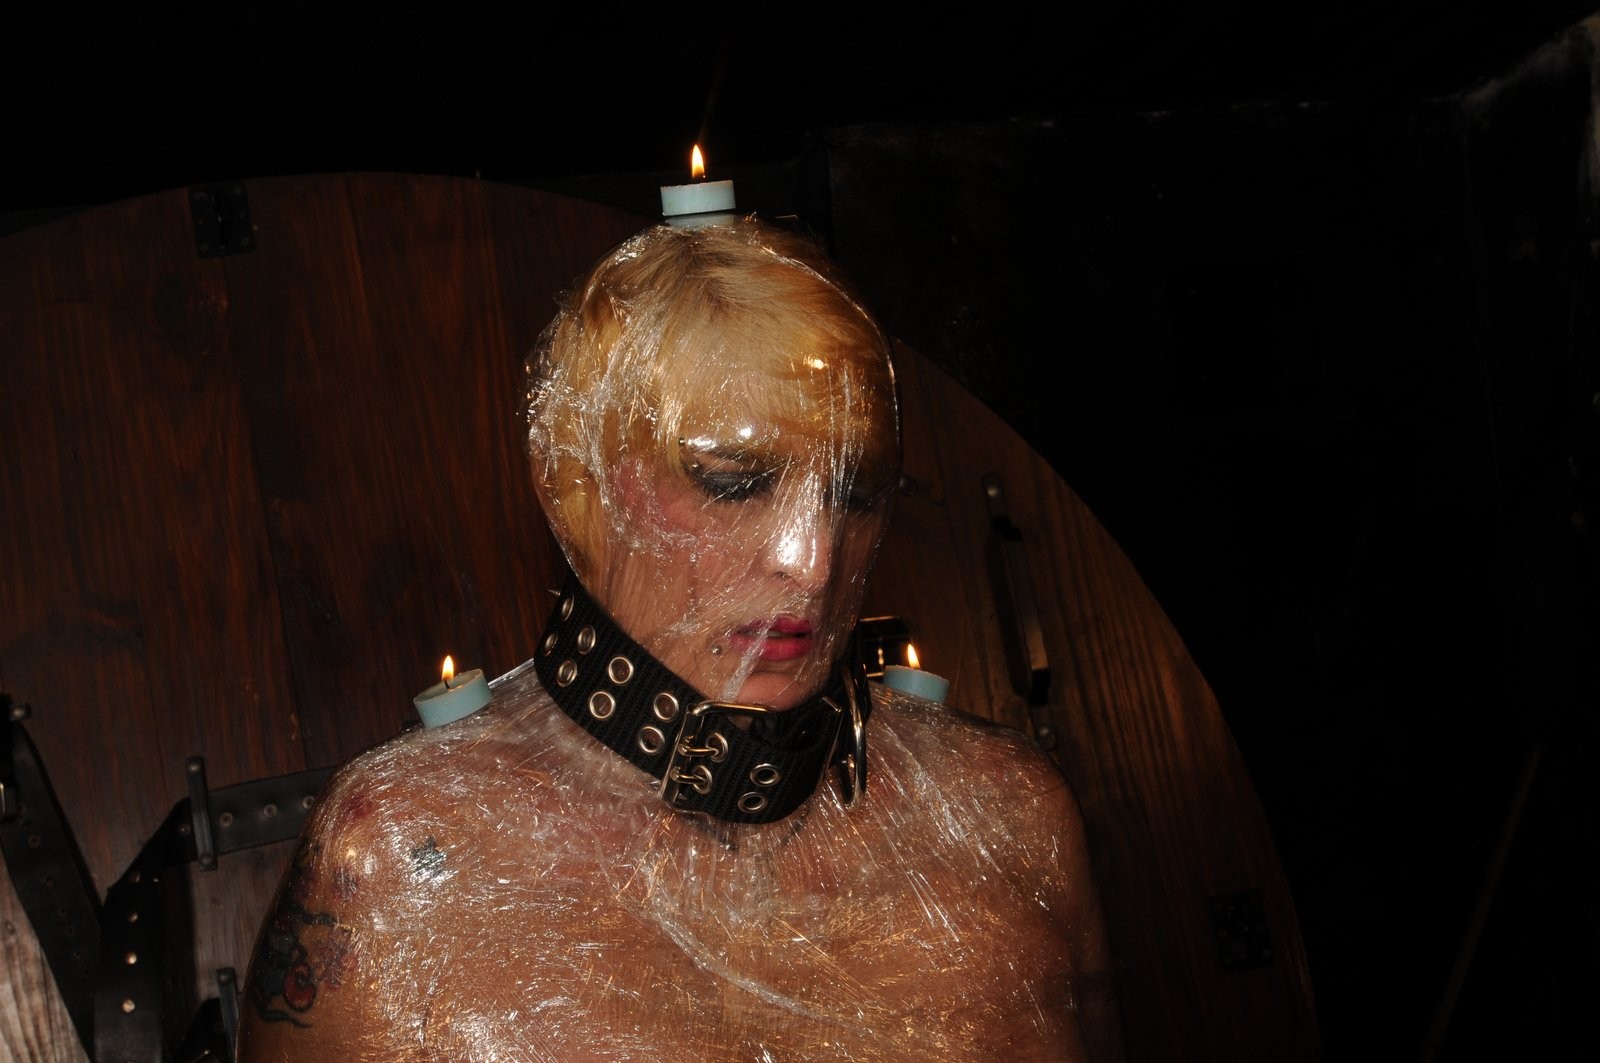 Mummified sklave mädchen karinas lesbisch clingfilm bondage und domination im restrai
 #72026594